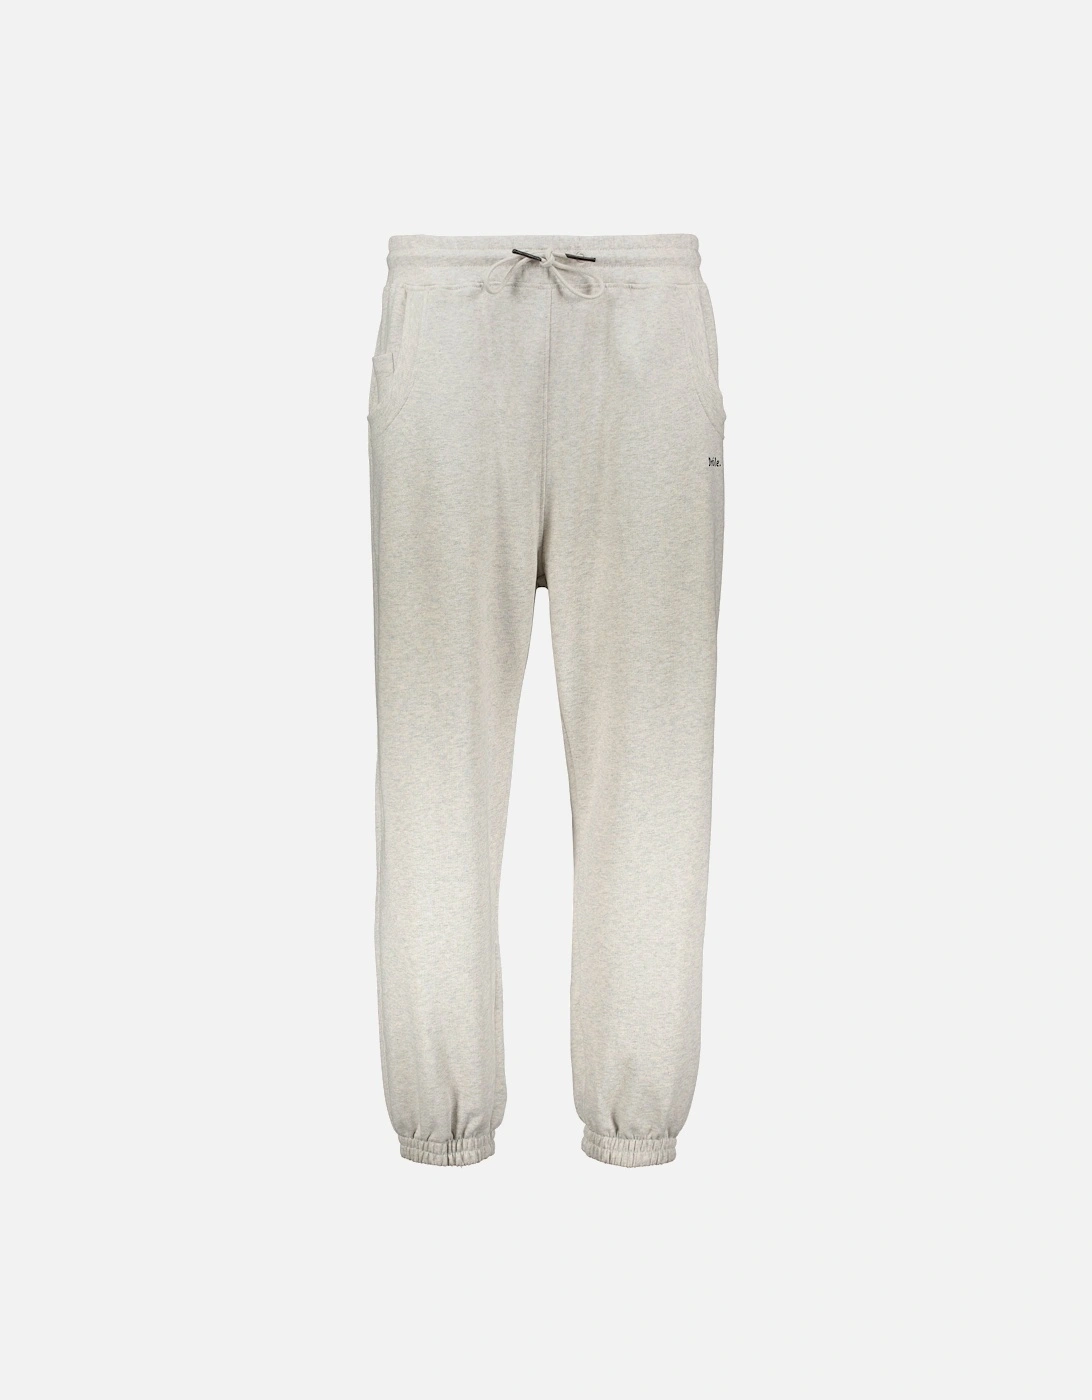 Le Survet Drole Sweatpants - Grey, 4 of 3